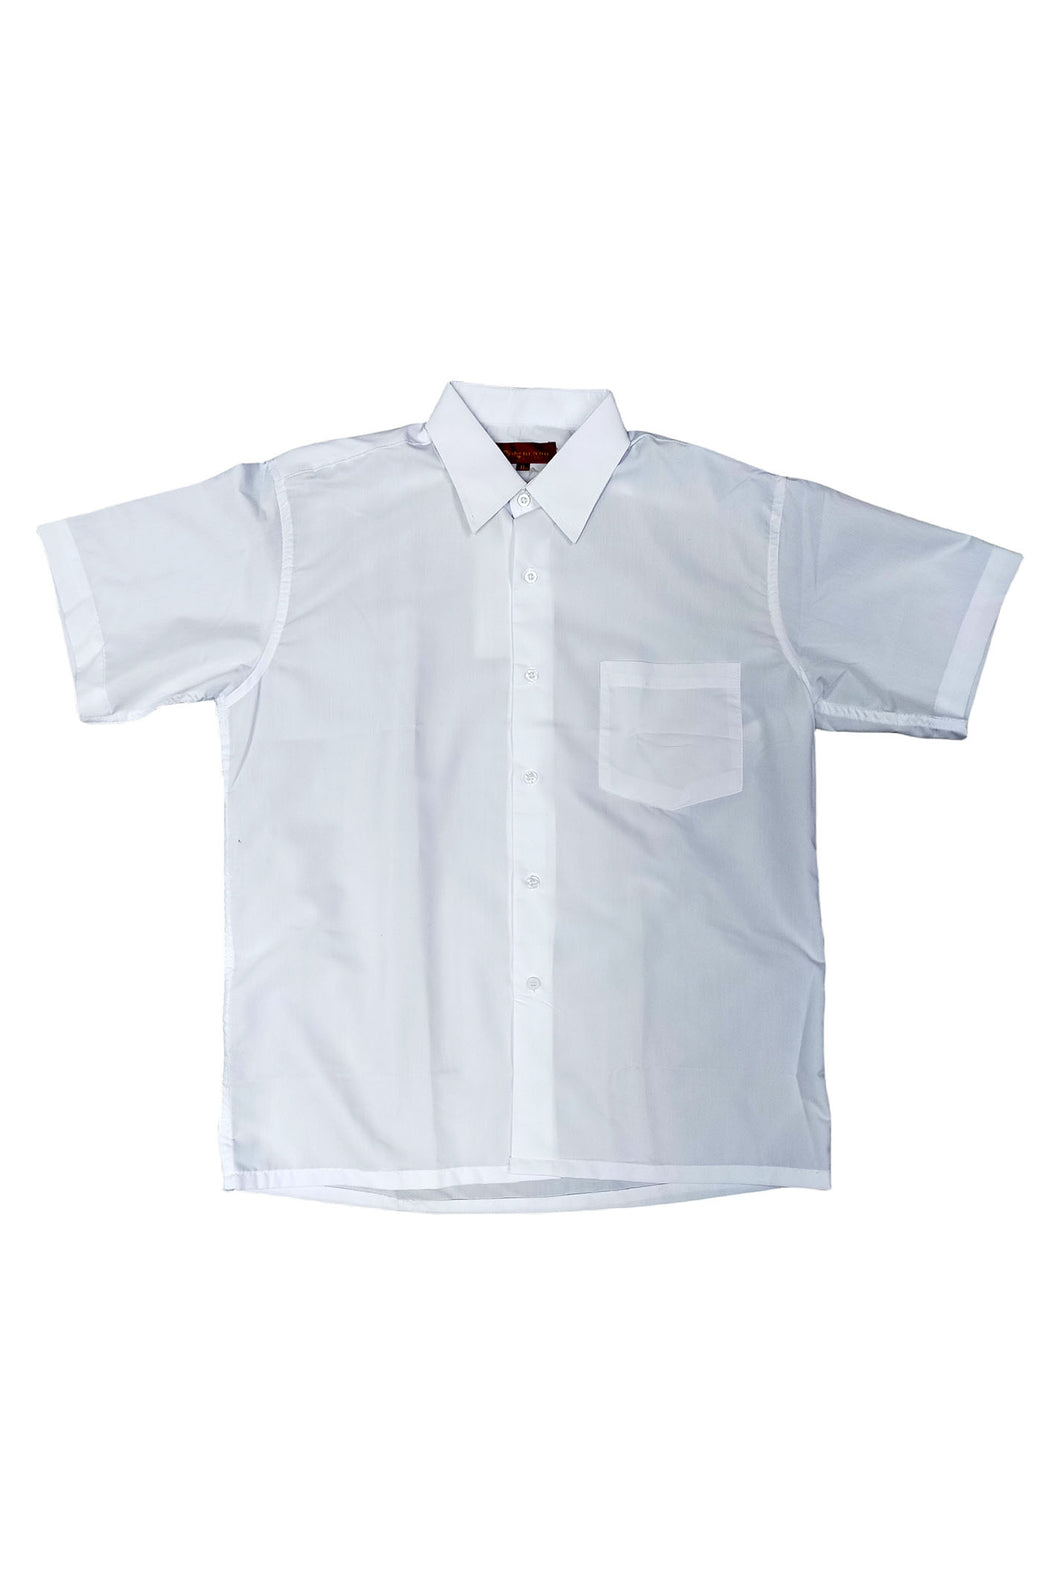 來辦訂購恤衫 訂製白色短袖襯衫 單袋設計 訂購團體制服公司 HK-Hanyeung-006